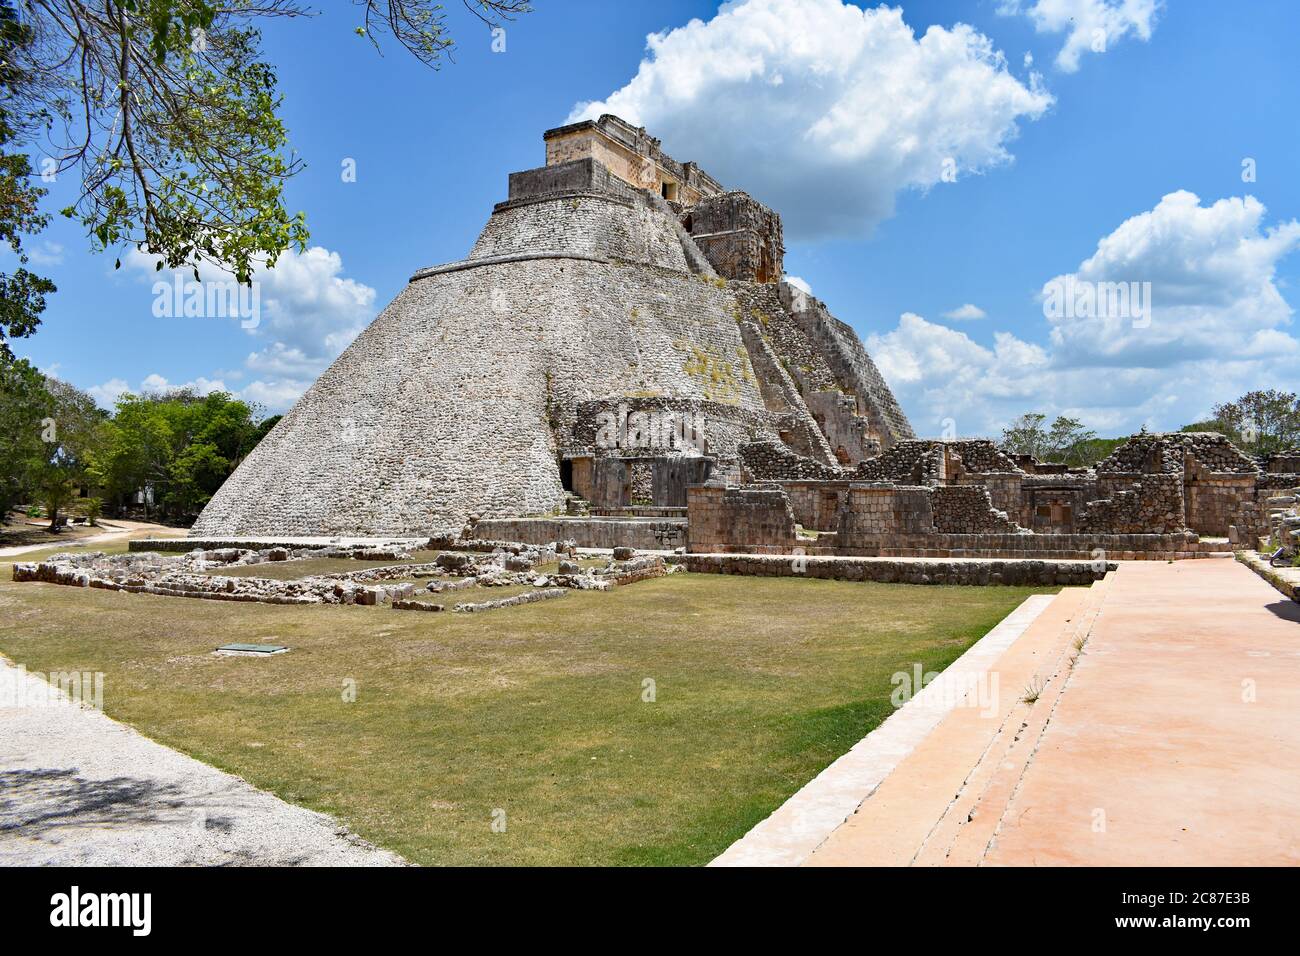 Die Pyramide des Magiers mit umliegenden Ruinen und Pfaden in der antiken Maya-Stadt Uxmal auf der Halbinsel Yucatan, Mexiko. Stockfoto